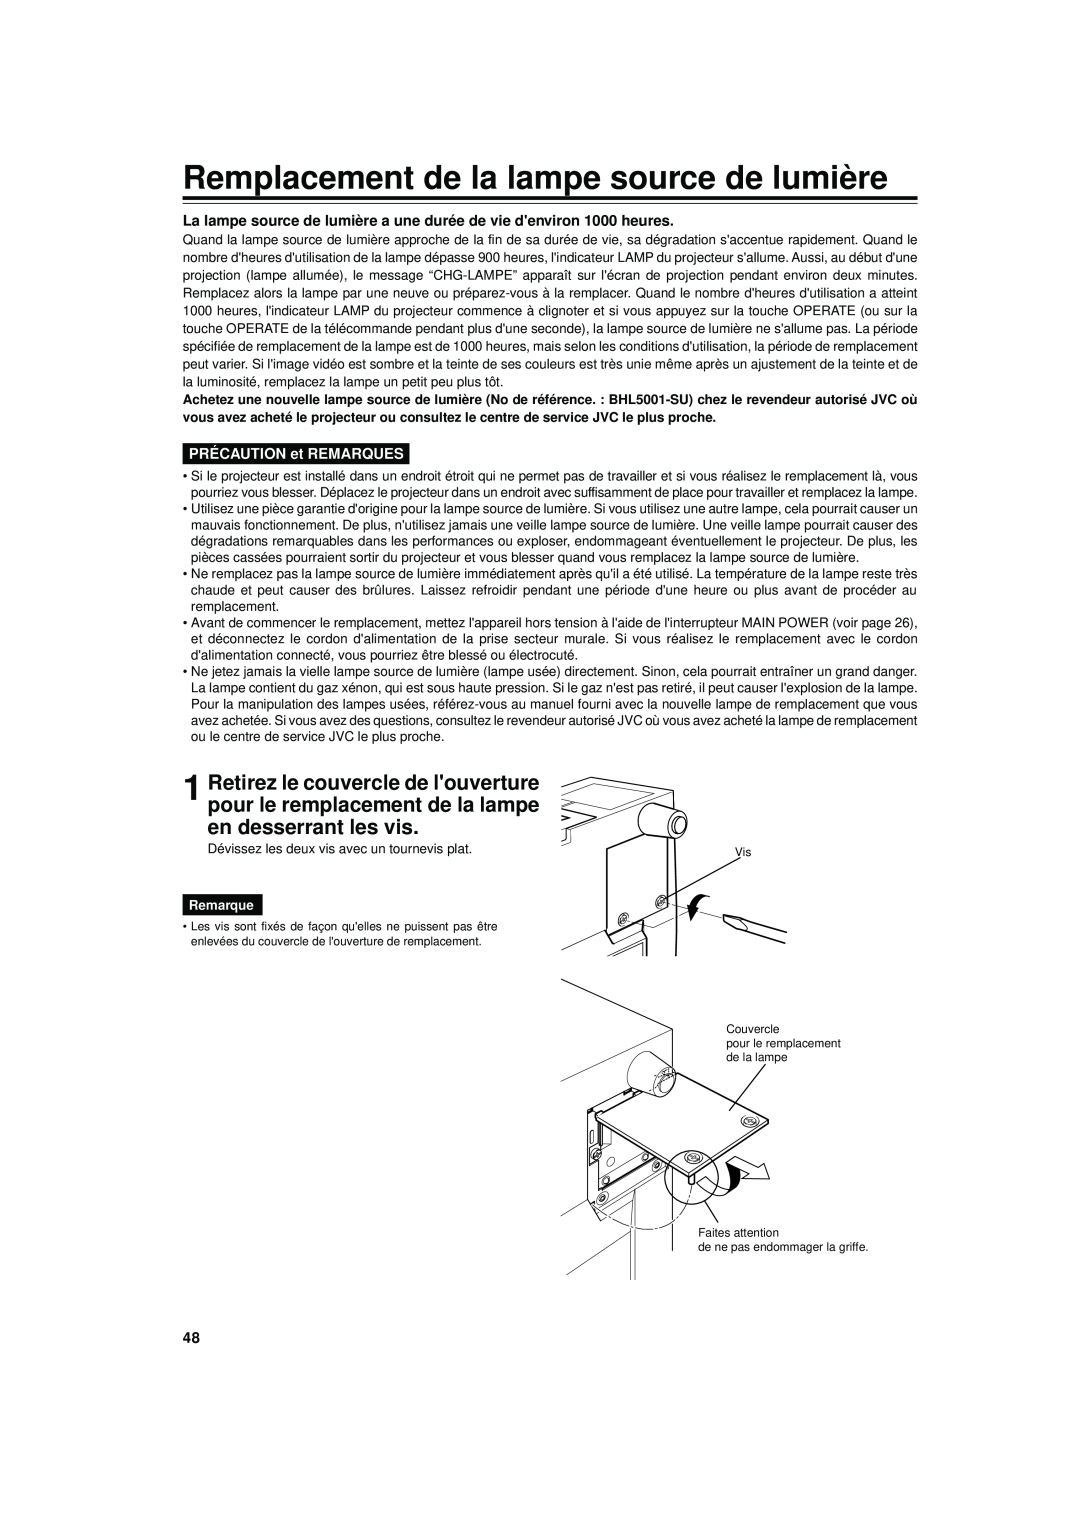 JVC DLA-S15U manual Remplacement de la lampe source de lumière, PRÉCAUTION et REMARQUES, Remarque 